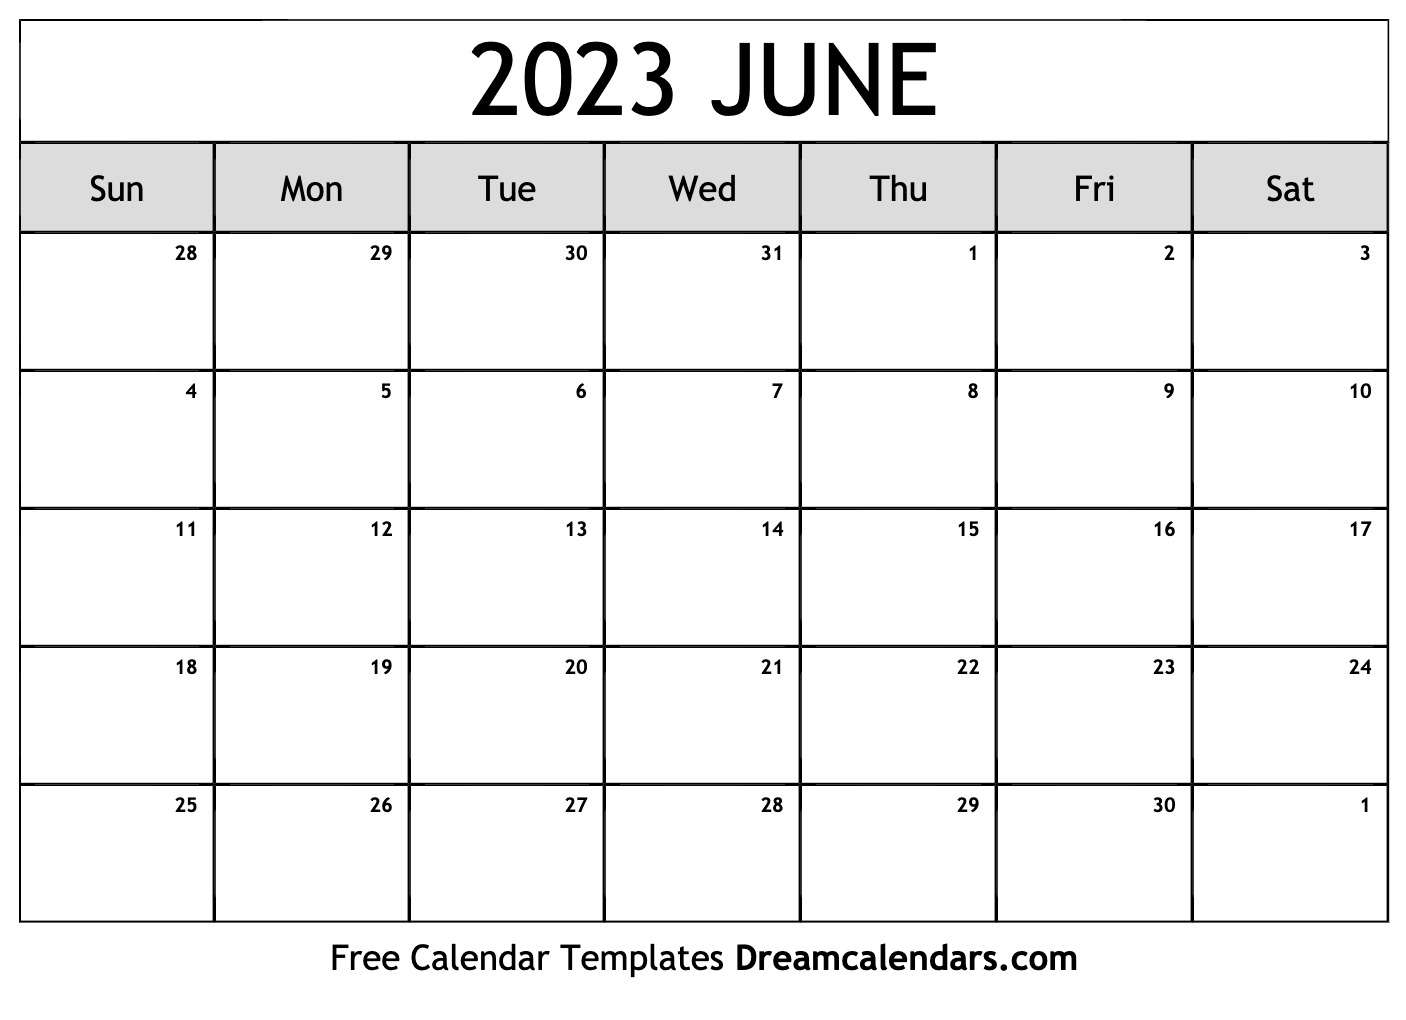 june-july-2023-calendar-2023-calendar